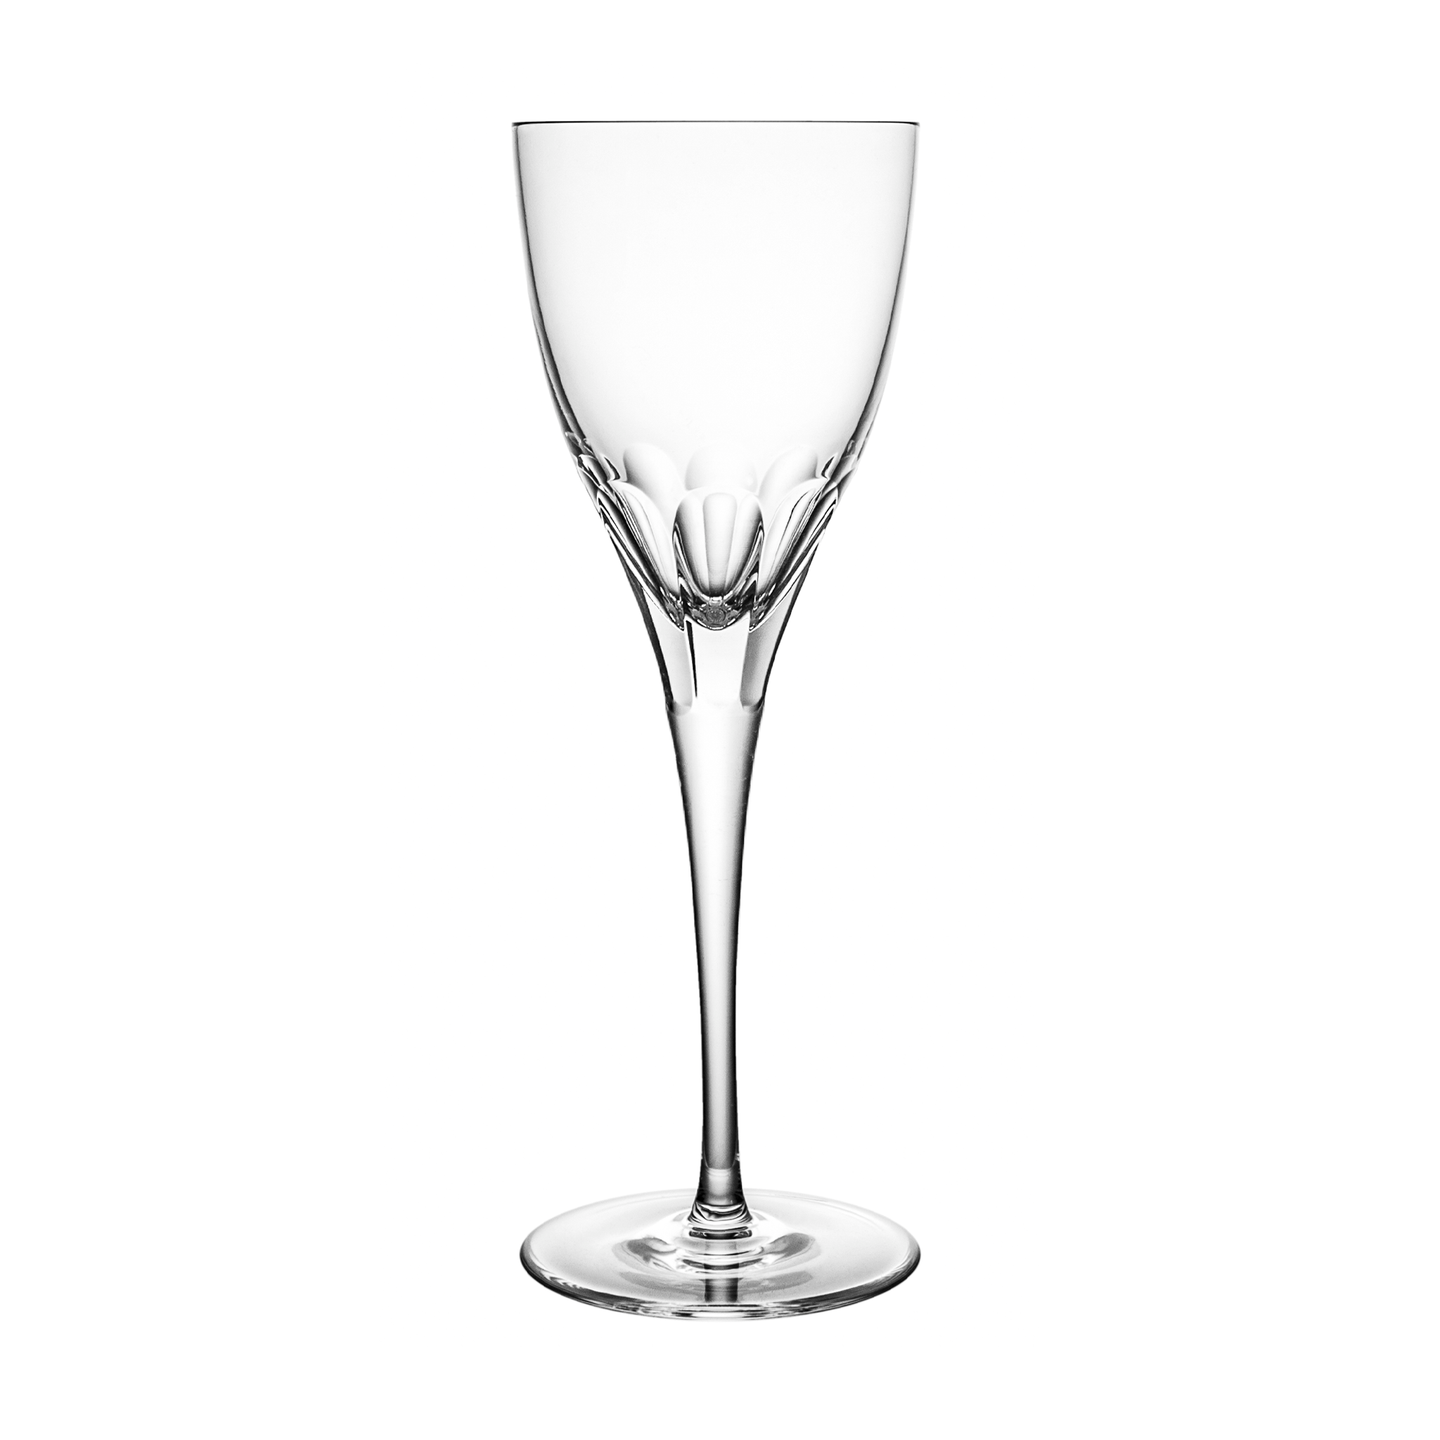 Claire Small Wine Glass